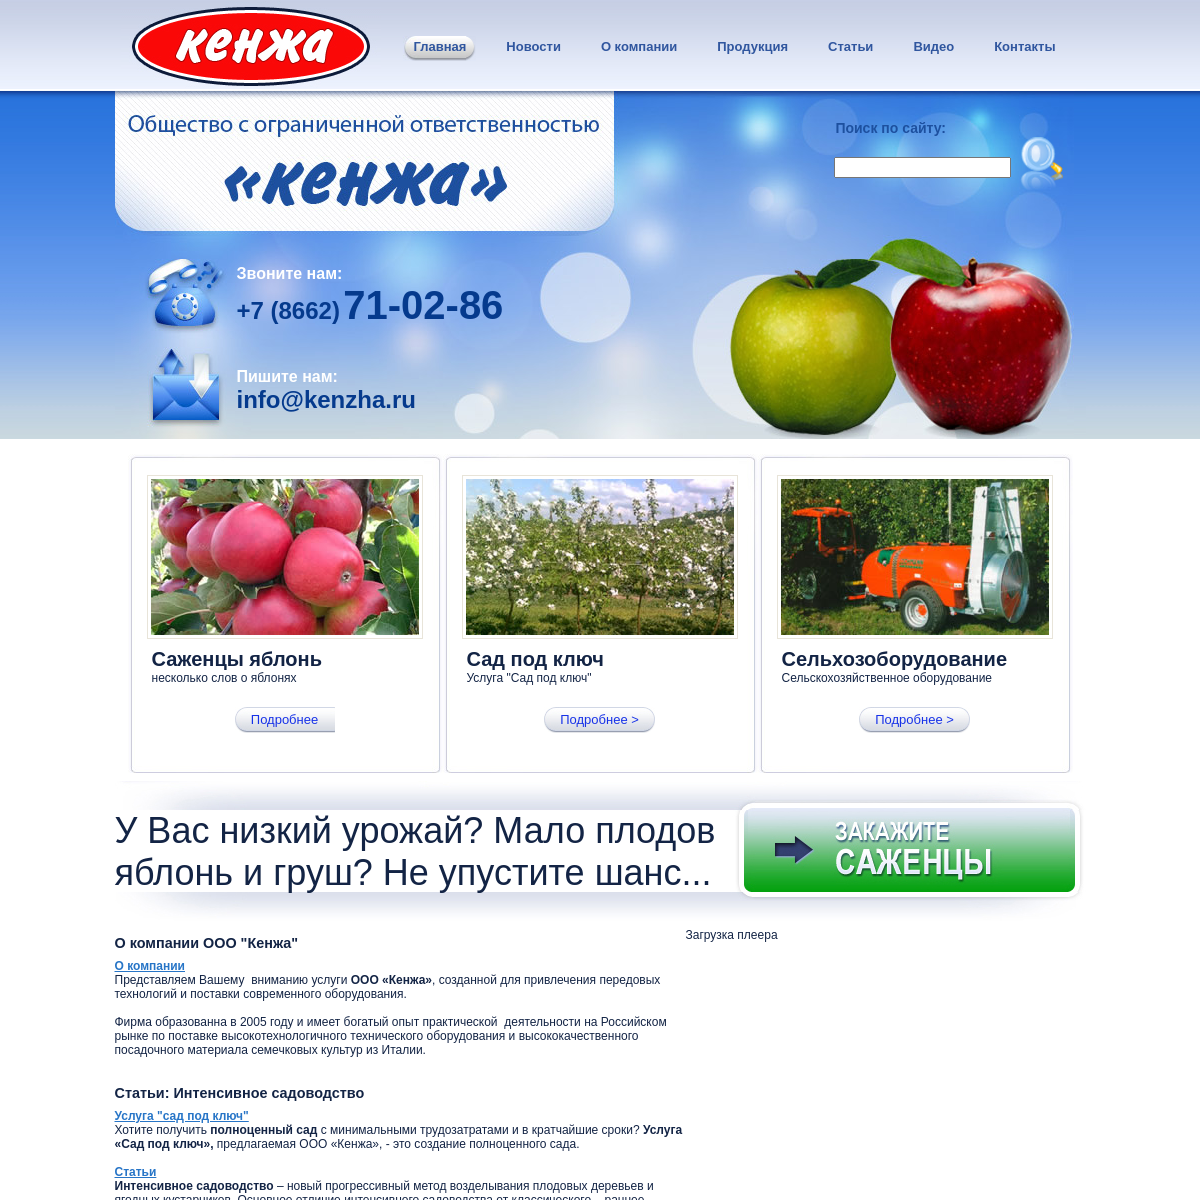 A complete backup of kenzha.ru